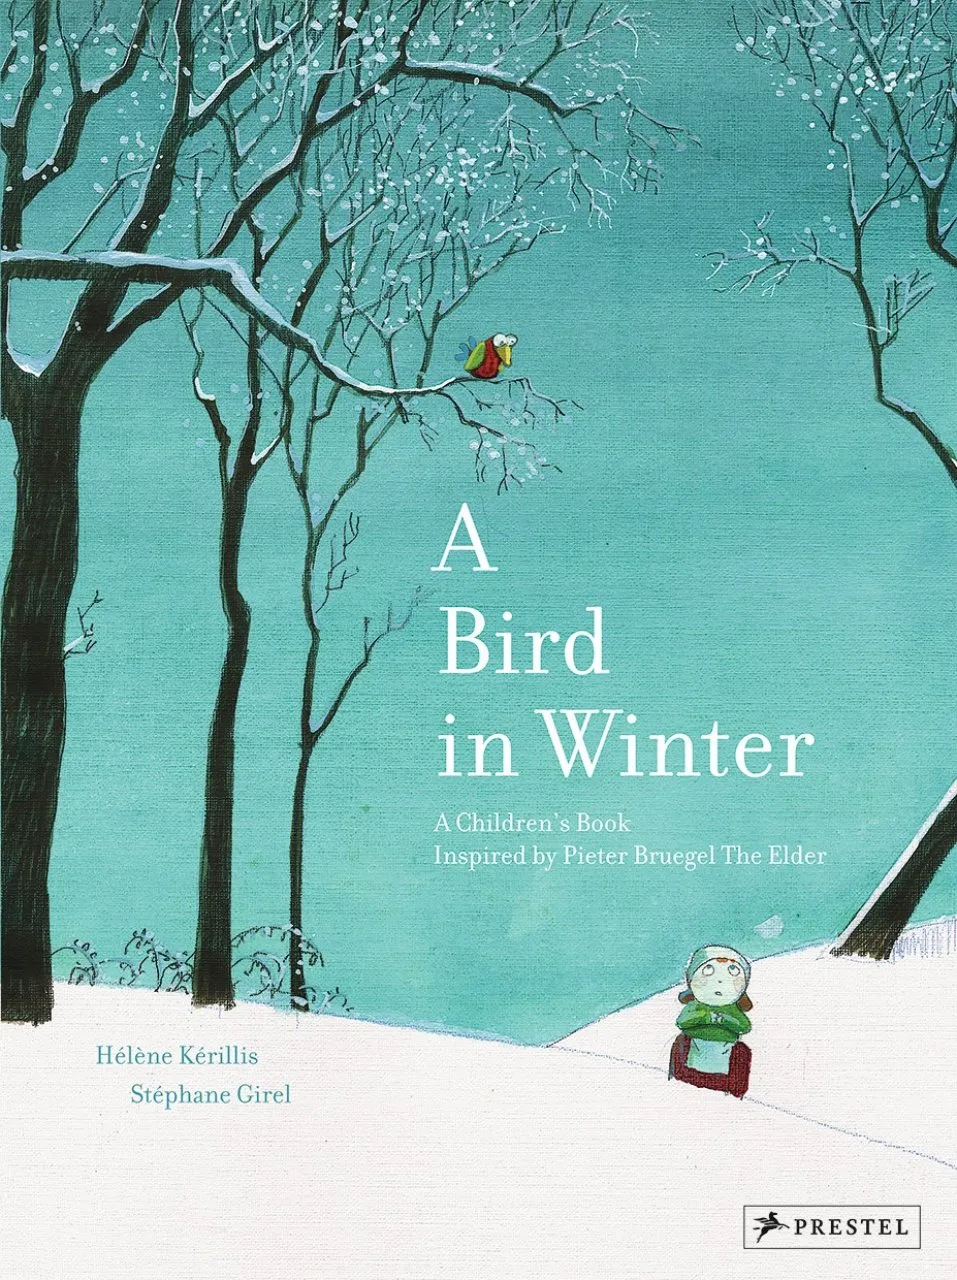 A Bird in Winter: A Children’s Book Inspired by Peter Breugel